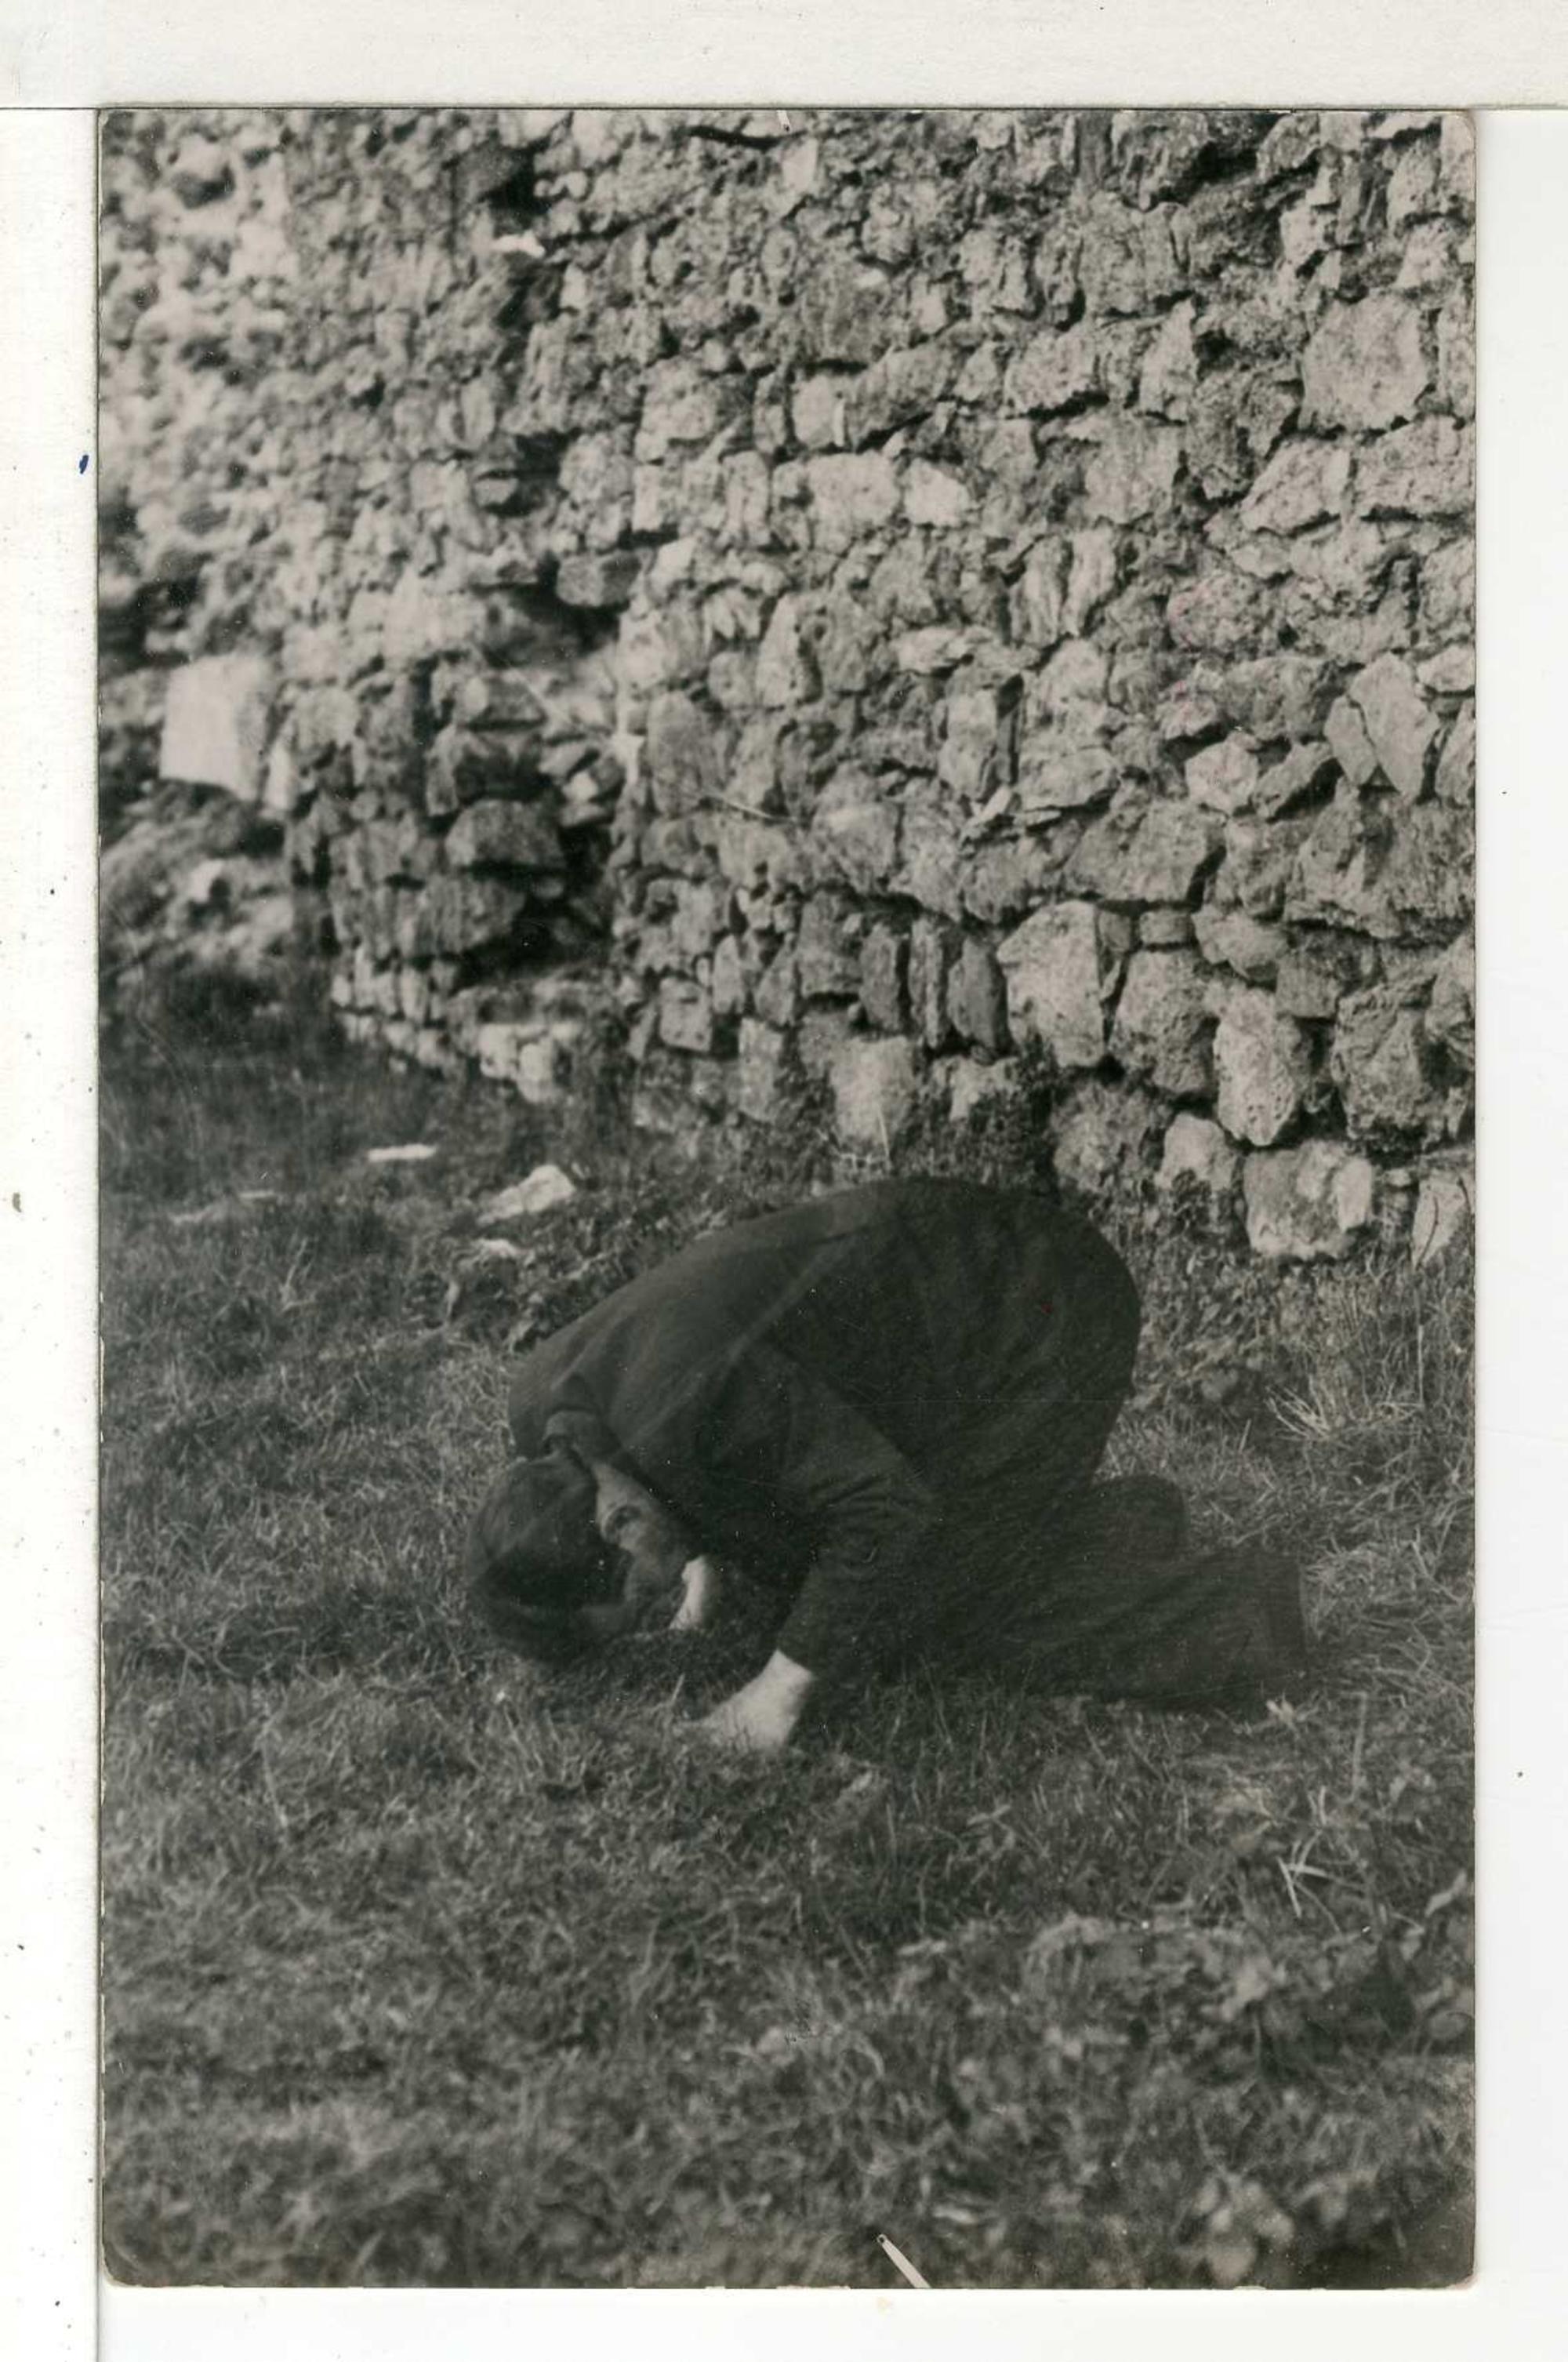 Un ciudadano arrolliado ante el paredón, Asturias 1934